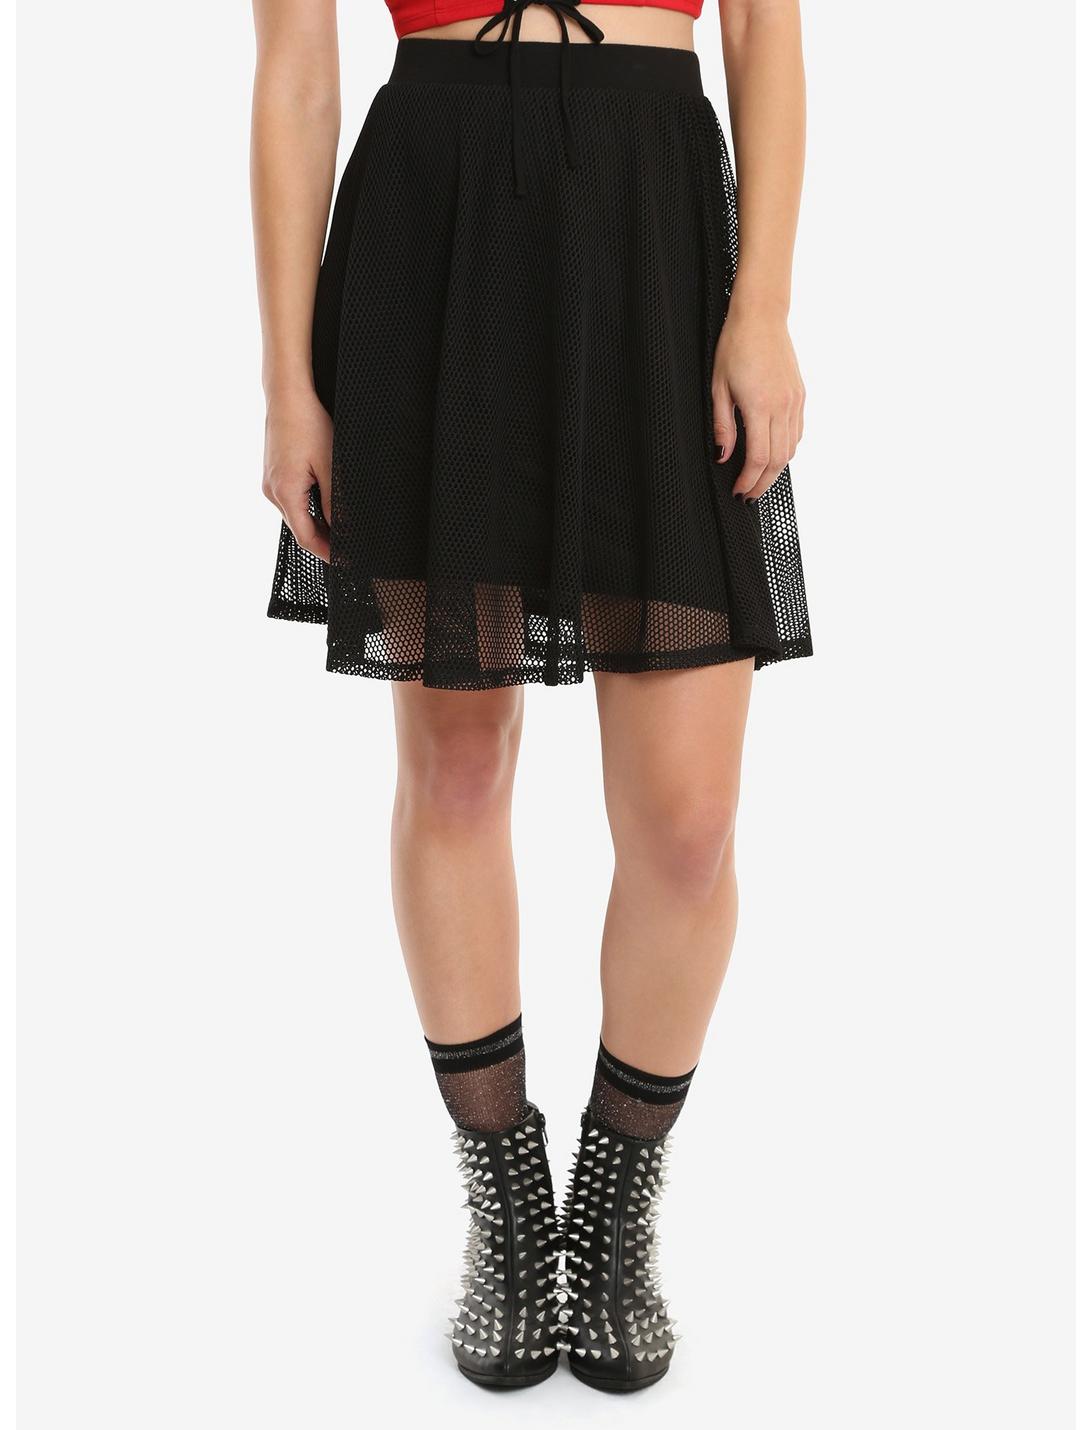 Black Fishnet Overlay Skirt, BLACK, hi-res